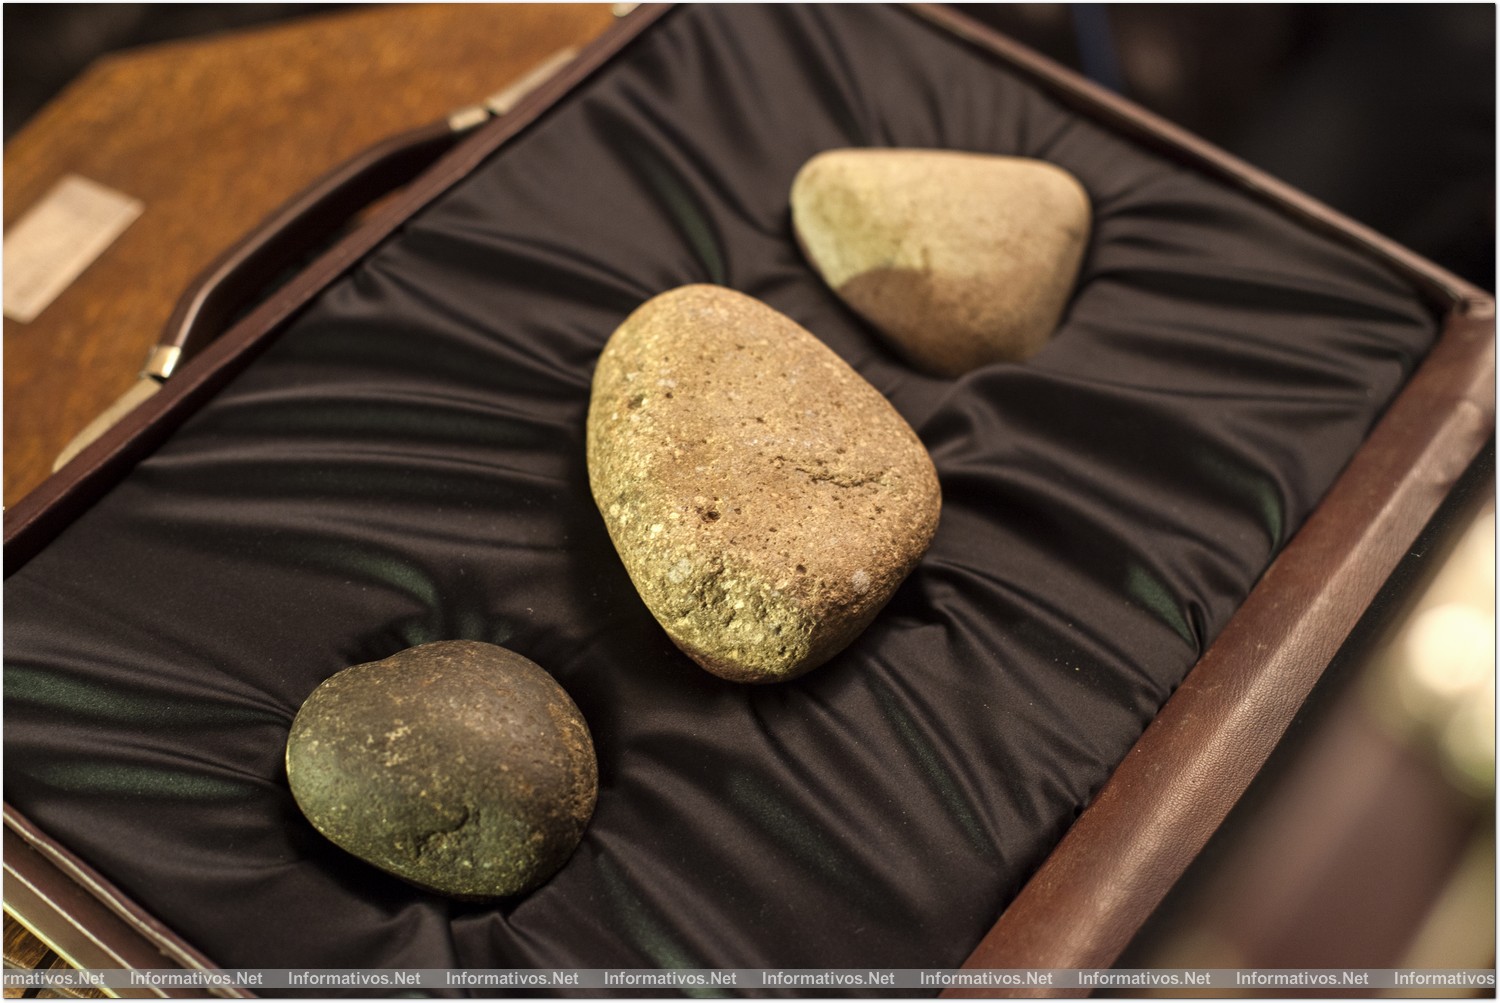 GIRONA9ABR014.- The Macallan y El Celler de Can Roca crean ‘The Ultimate Dinner': Three stones